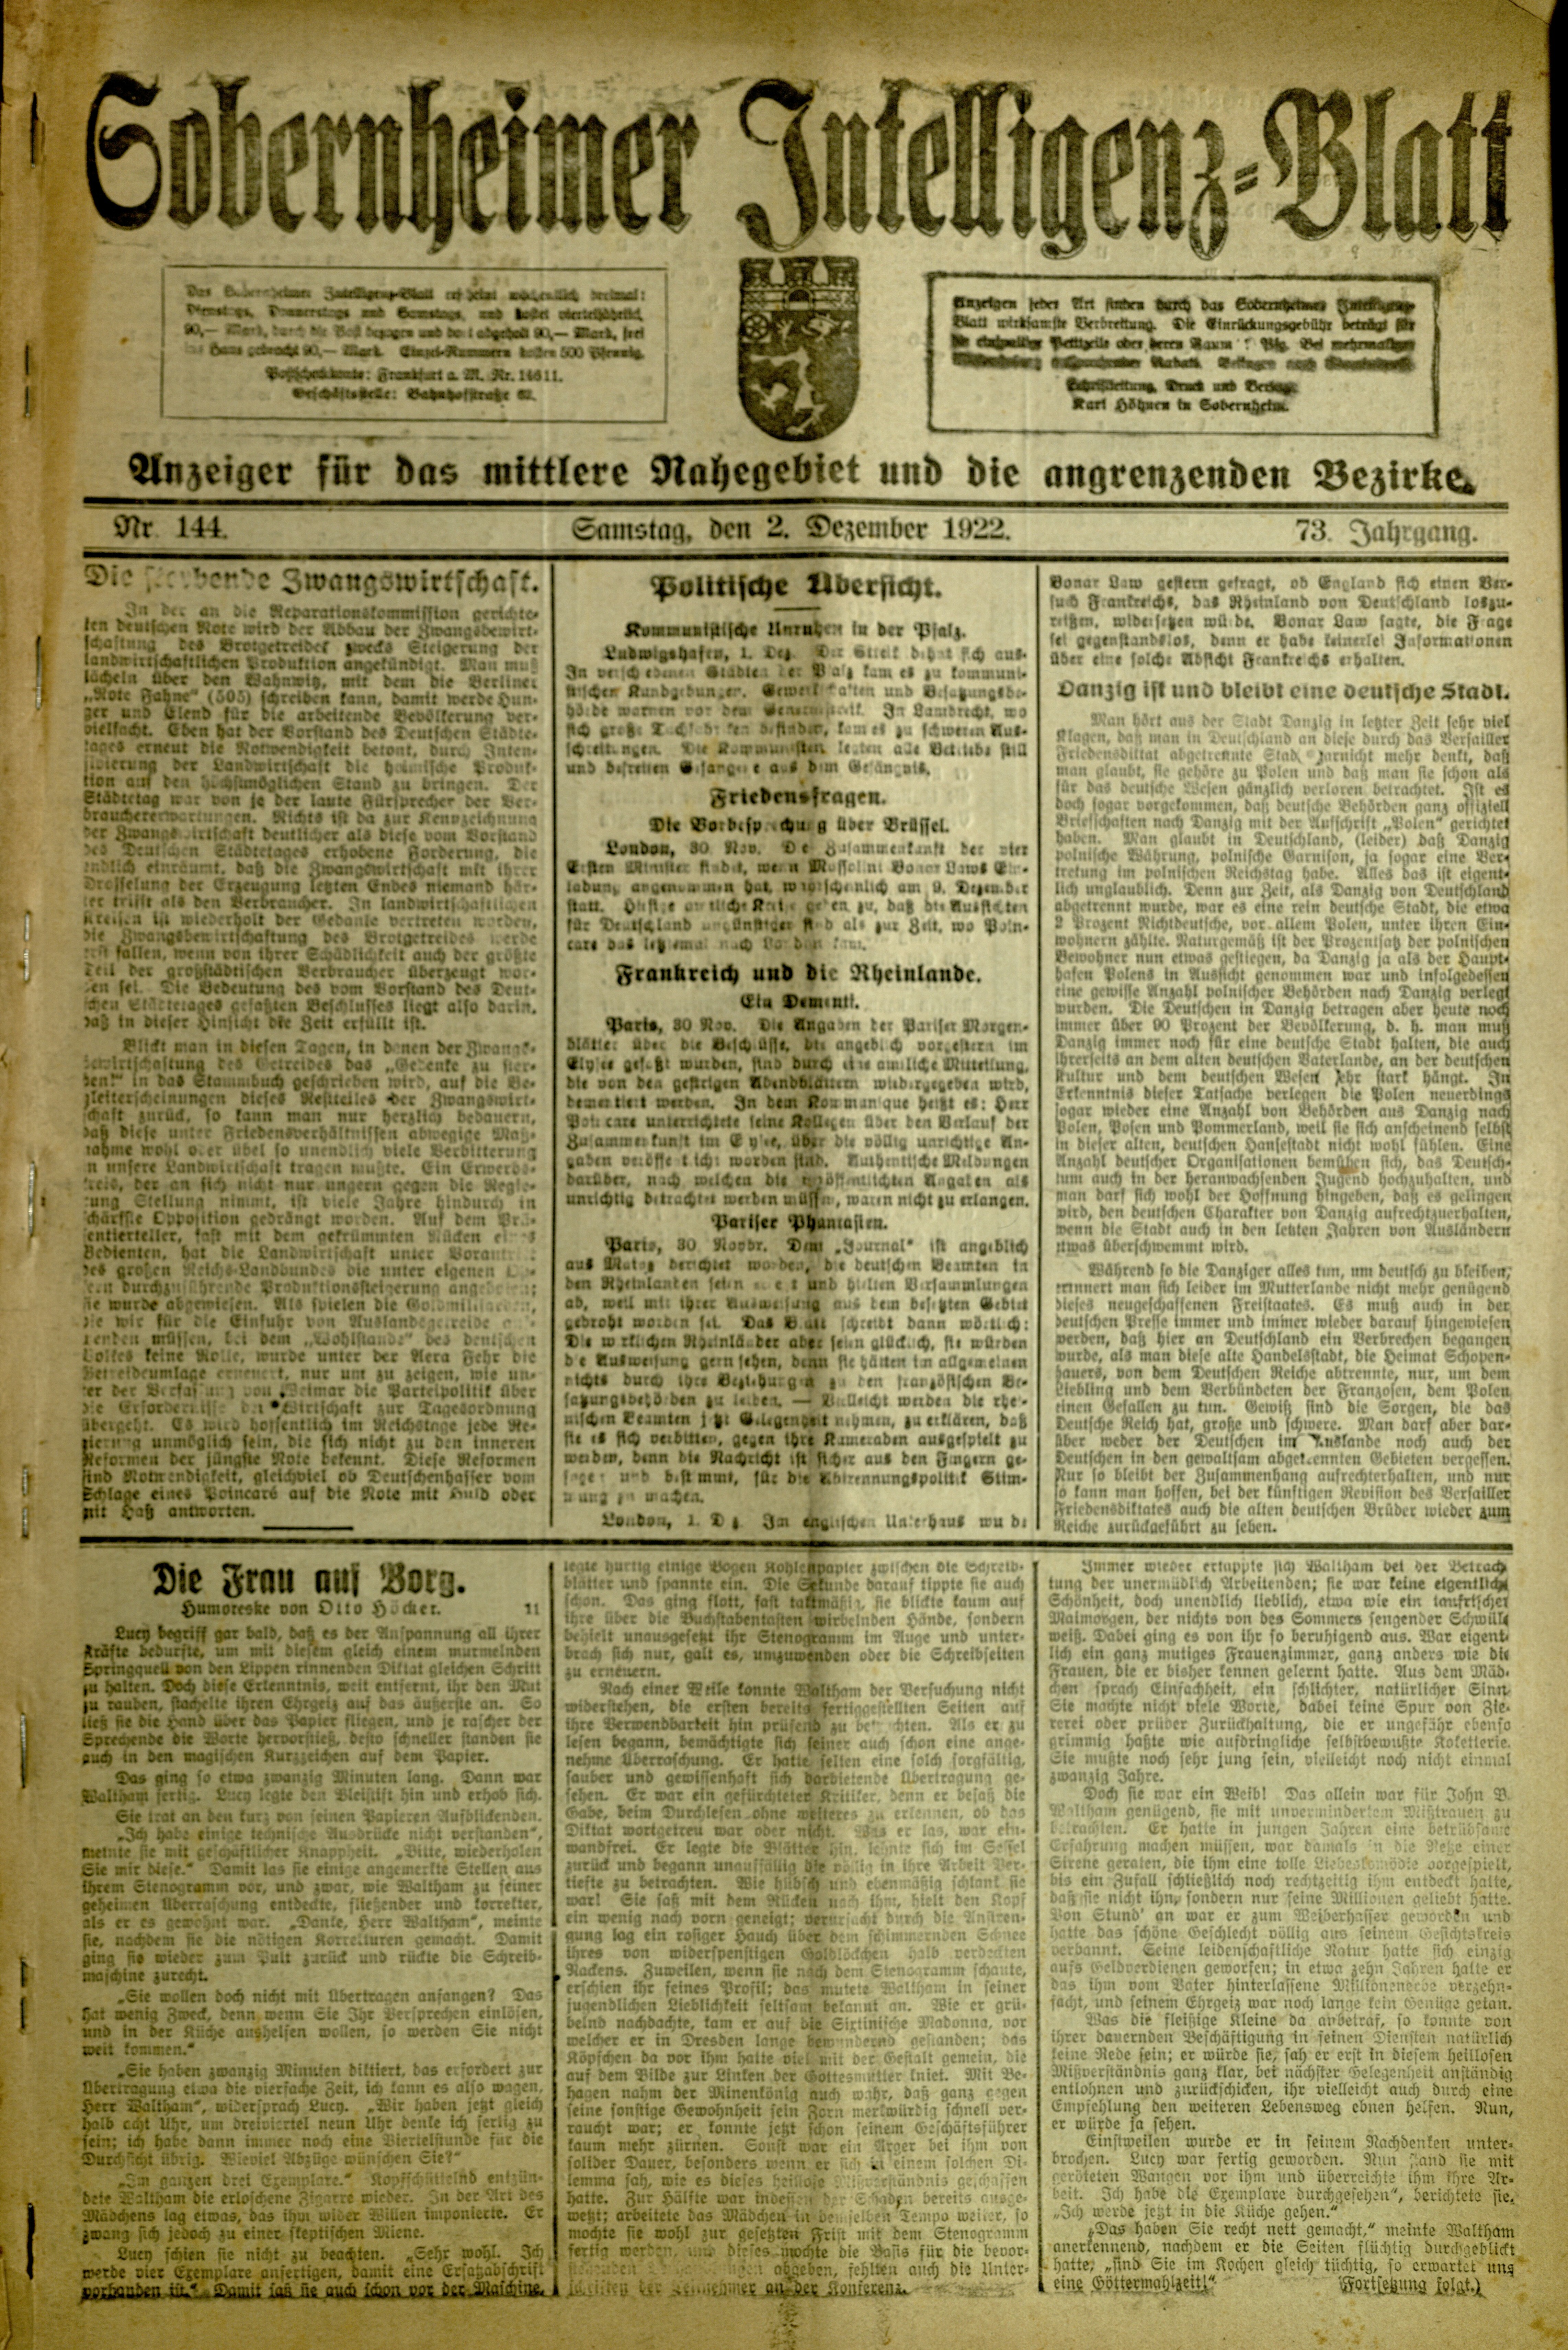 Zeitung: Sobernheimer Intelligenzblatt; Dezember 1922, Jg. 73 Nr. 144 (Heimatmuseum Bad Sobernheim CC BY-NC-SA)